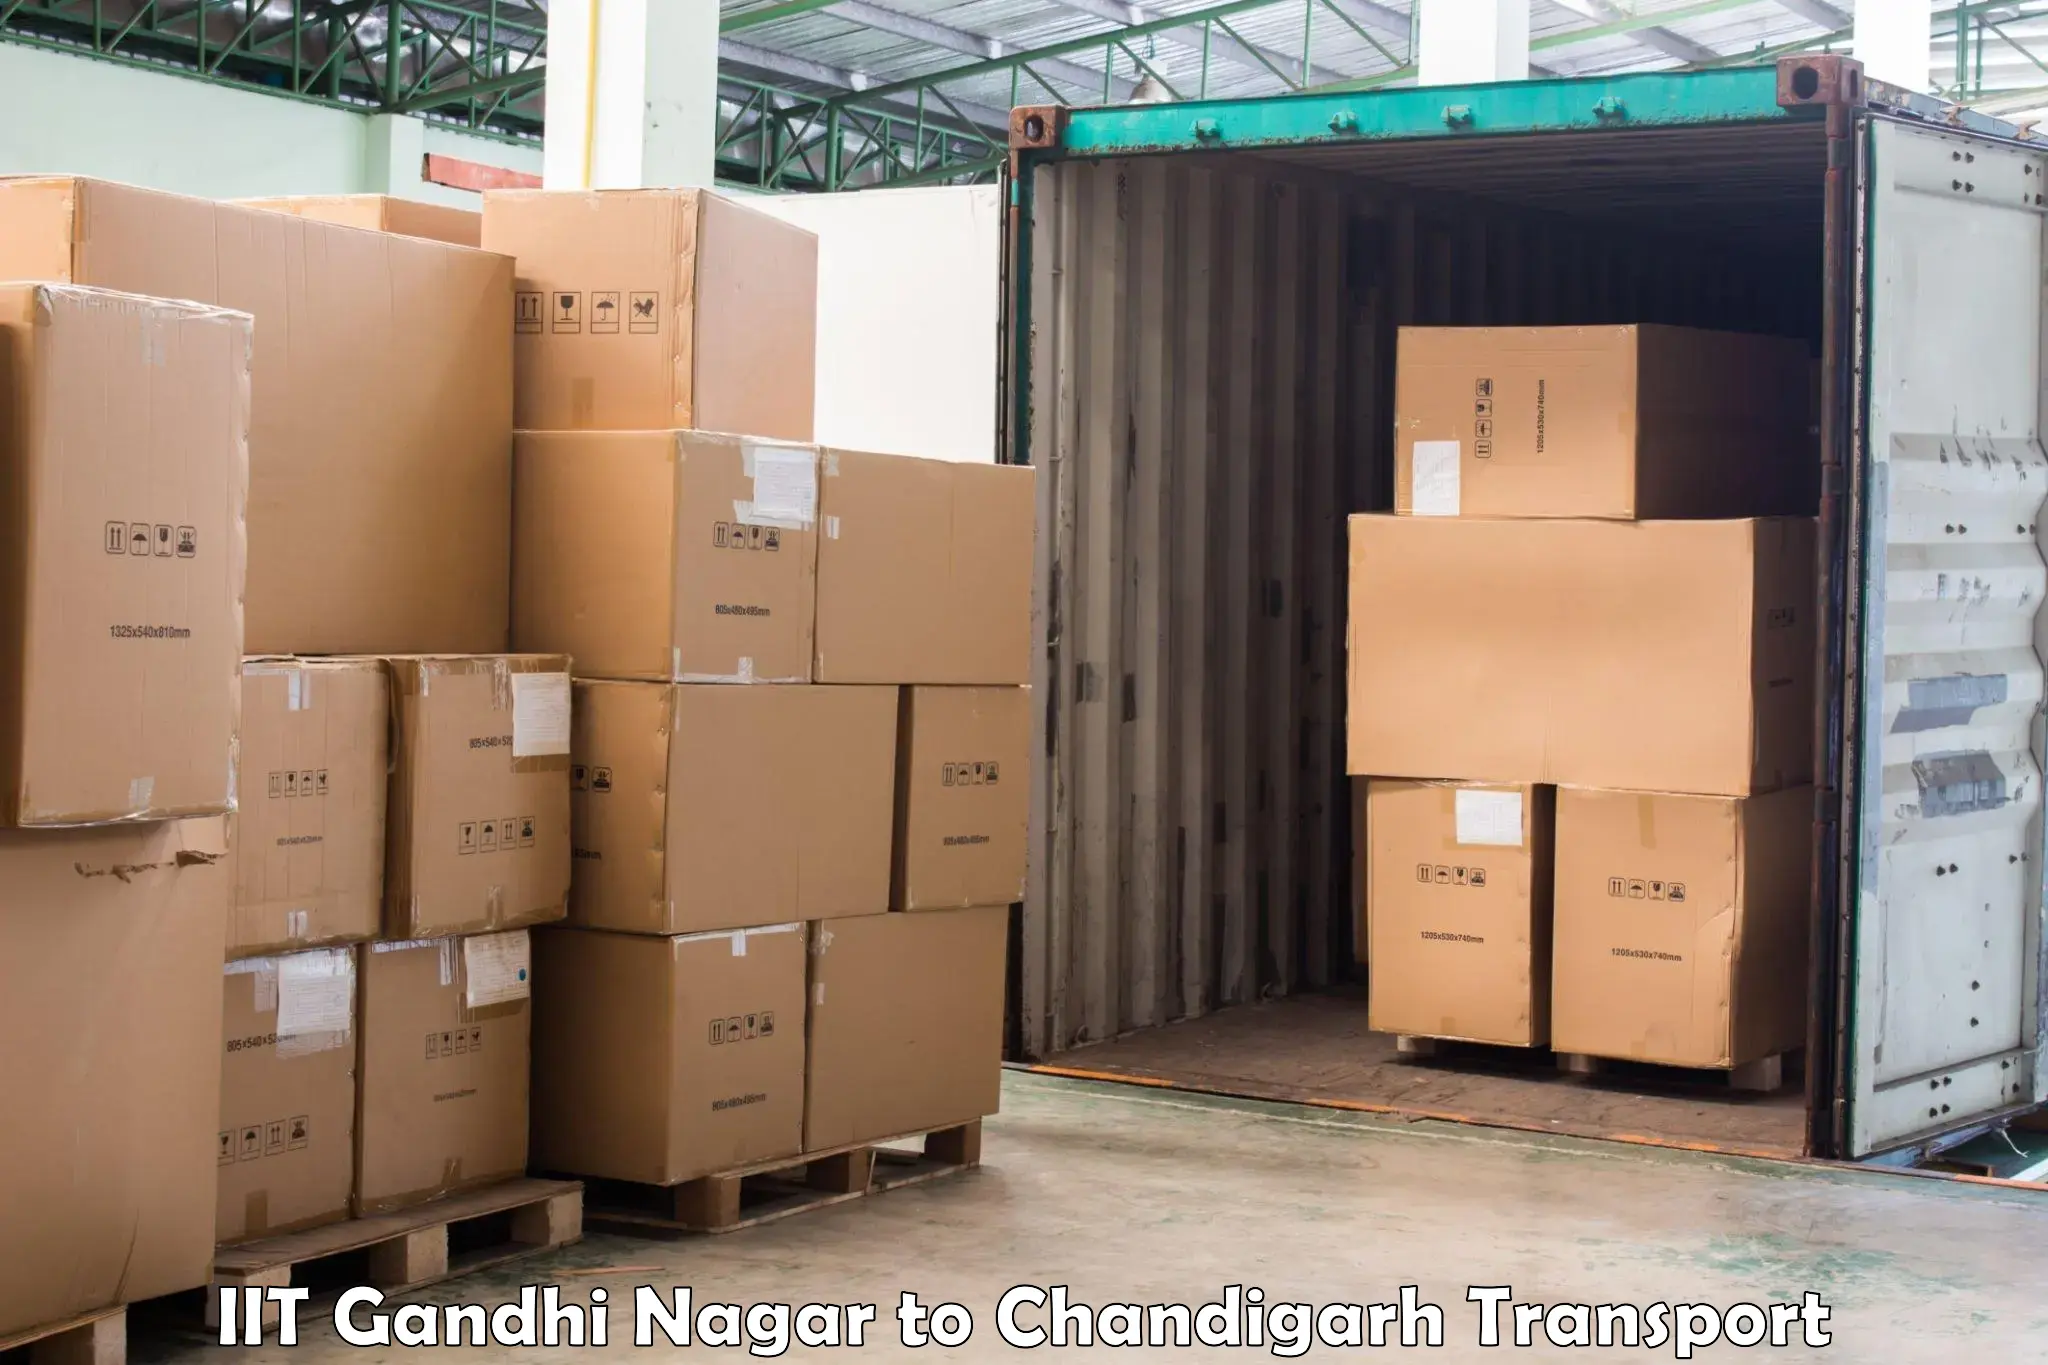 Container transport service IIT Gandhi Nagar to Chandigarh